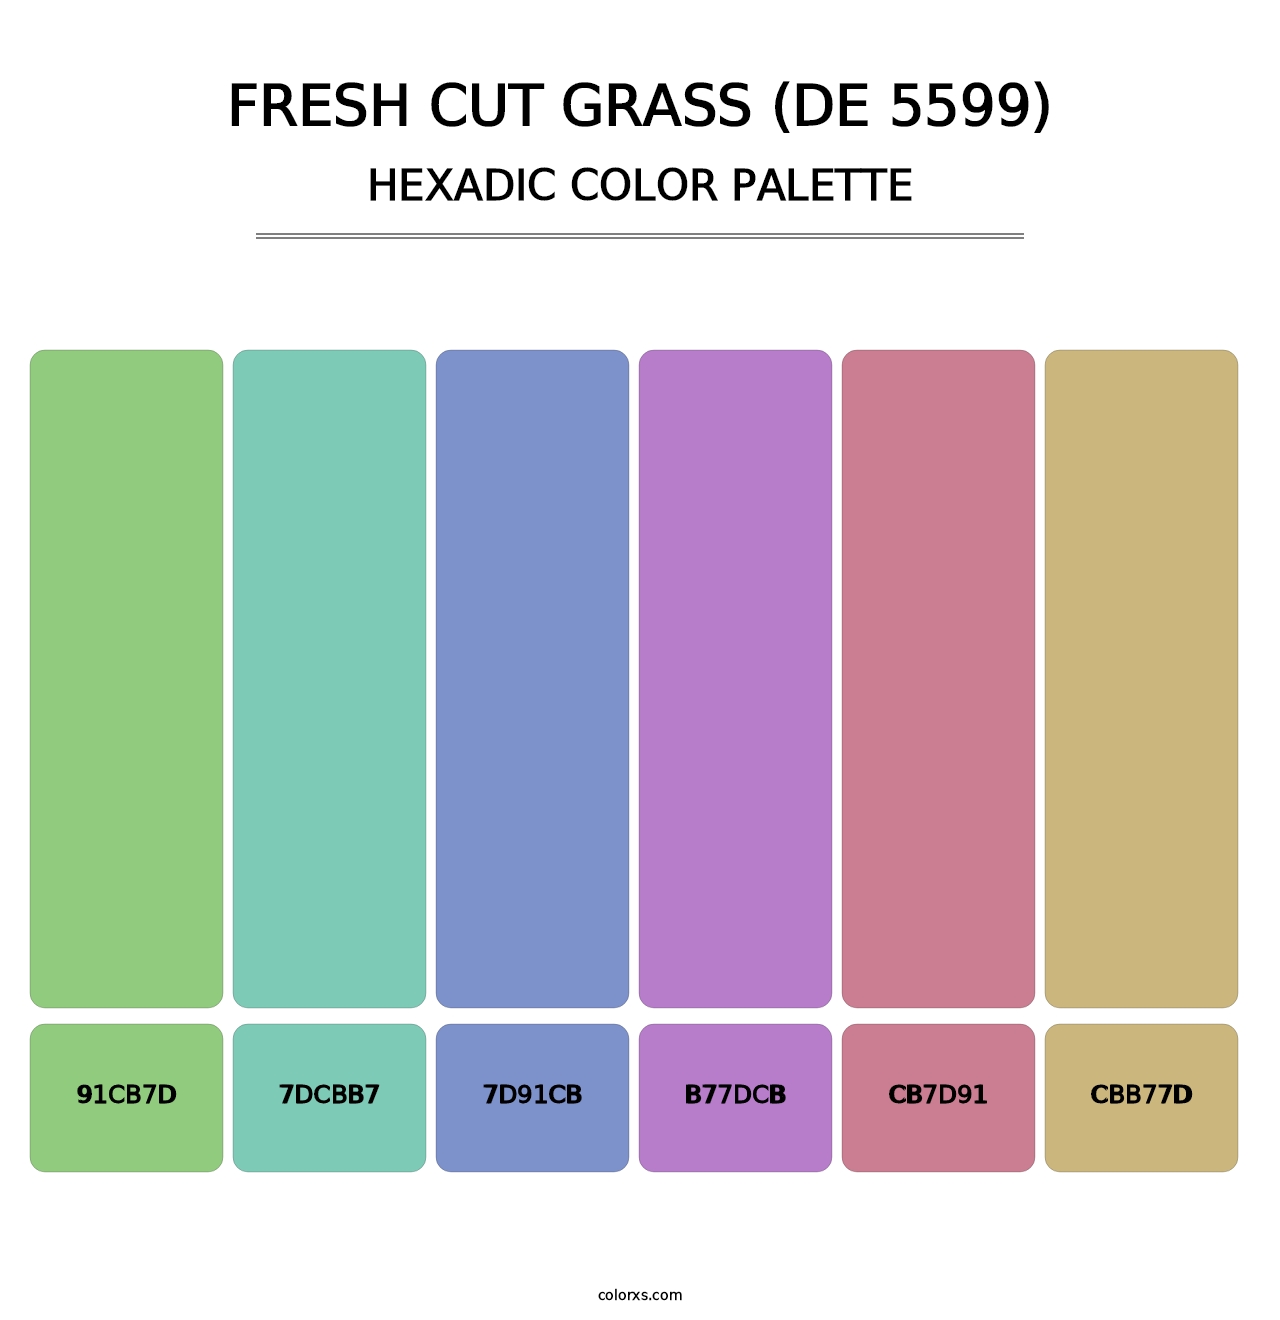 Fresh Cut Grass (DE 5599) - Hexadic Color Palette